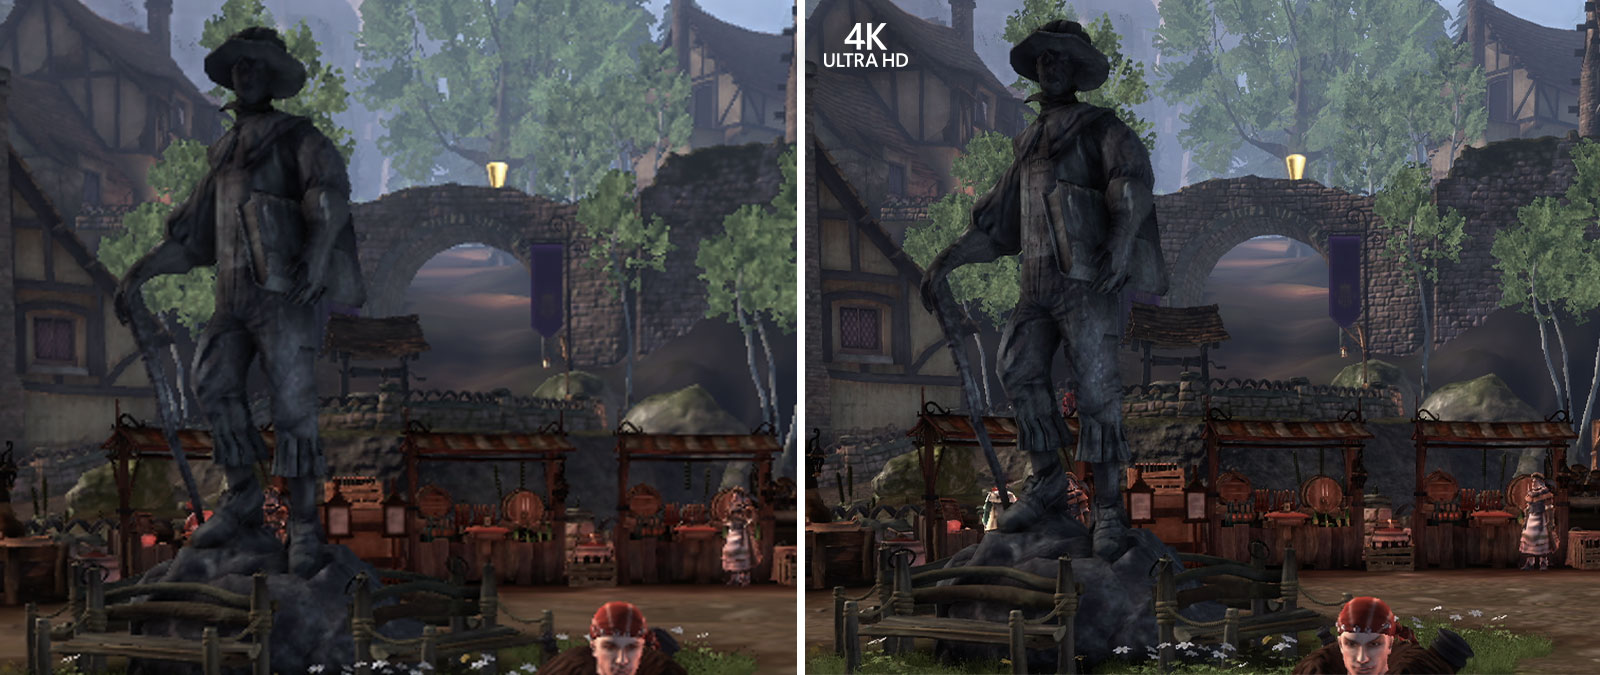 4K Ultra HD, összehasonlító képernyőképek a Fable Anniversary játékból, kinagyítva a háttér részletességének megtekintése érdekében